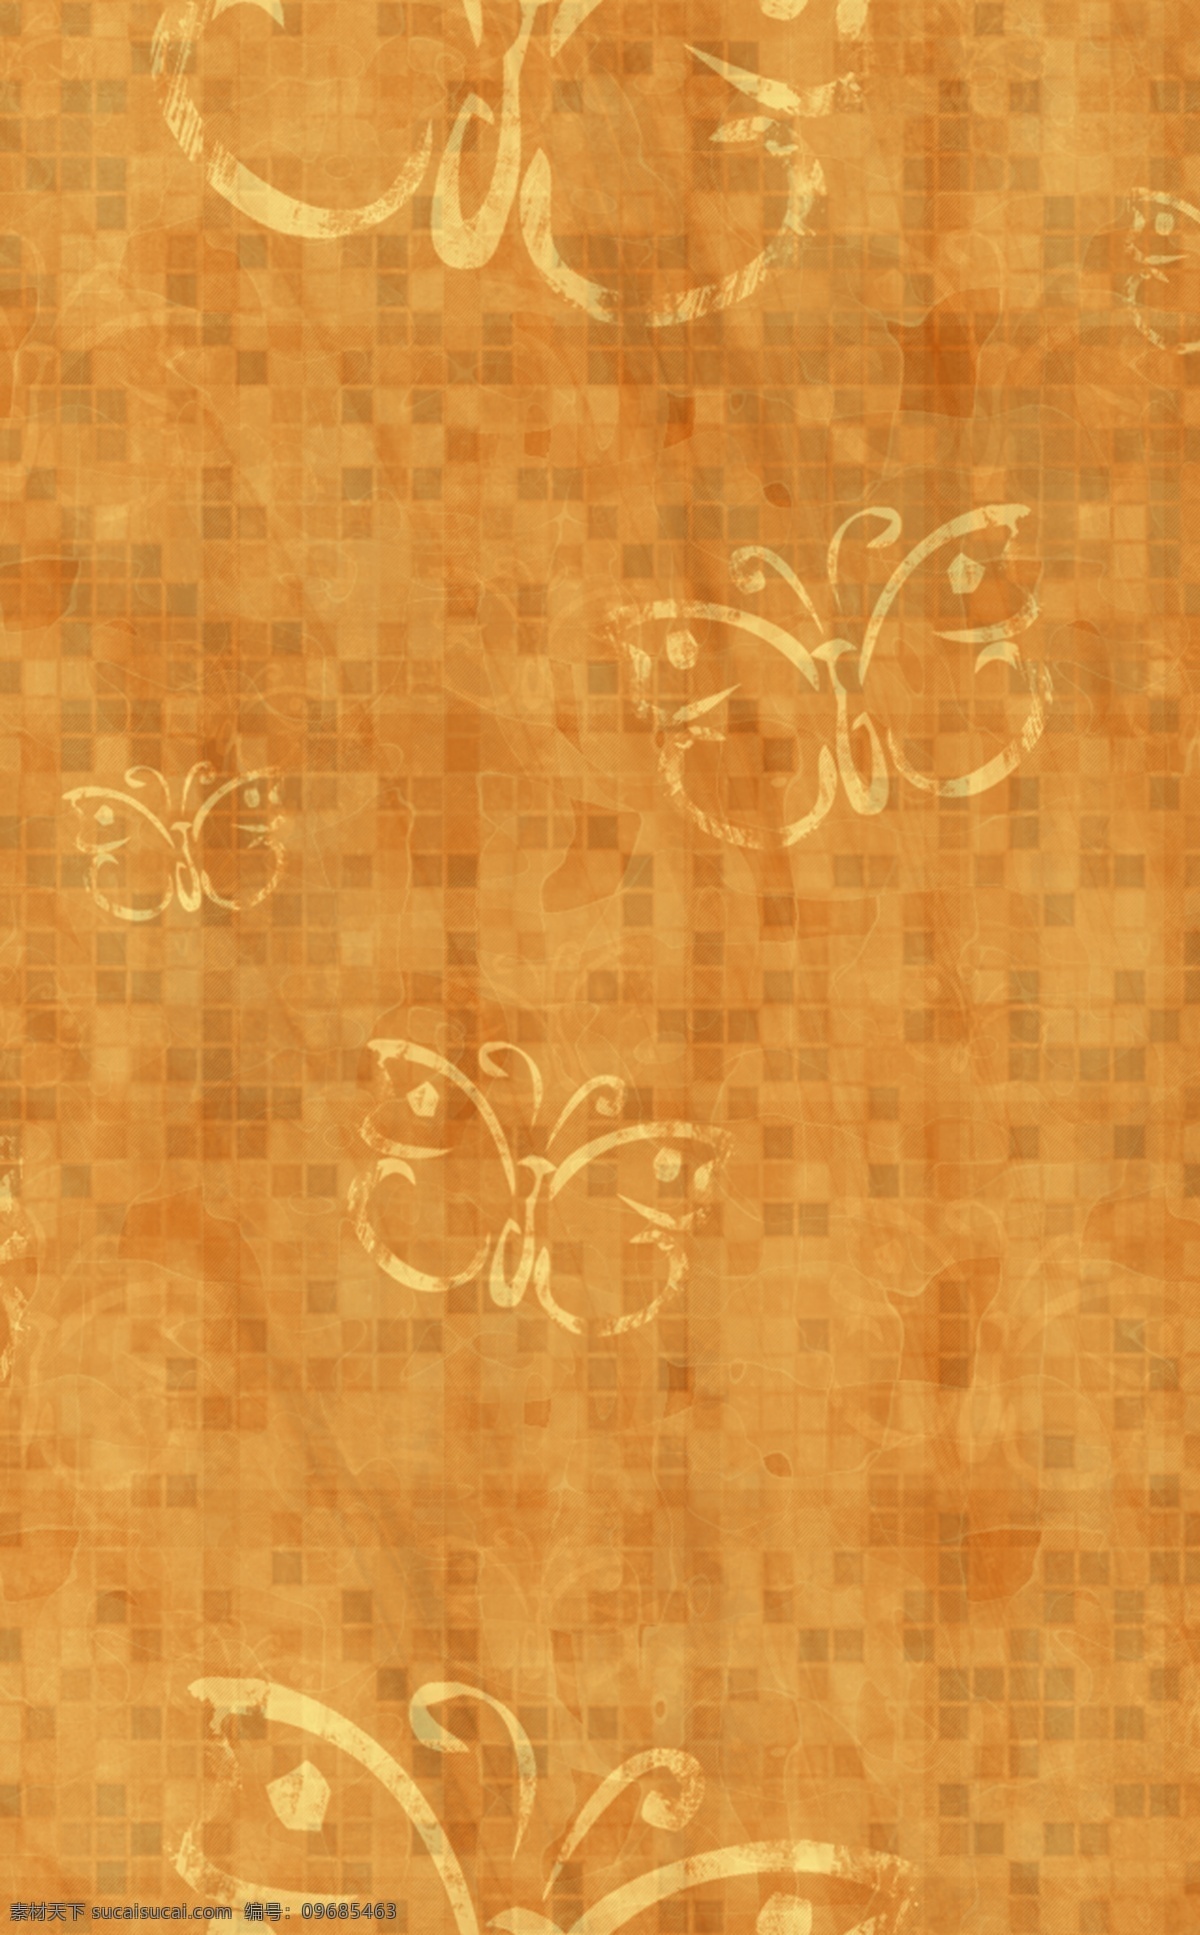 蝴蝶壁纸 应用 ps 精雕细琢 耐心制作而正 滤镜 一些 手法 基本 用到 蝴蝶 适合 壁纸 商业 图稿 背景 橙色